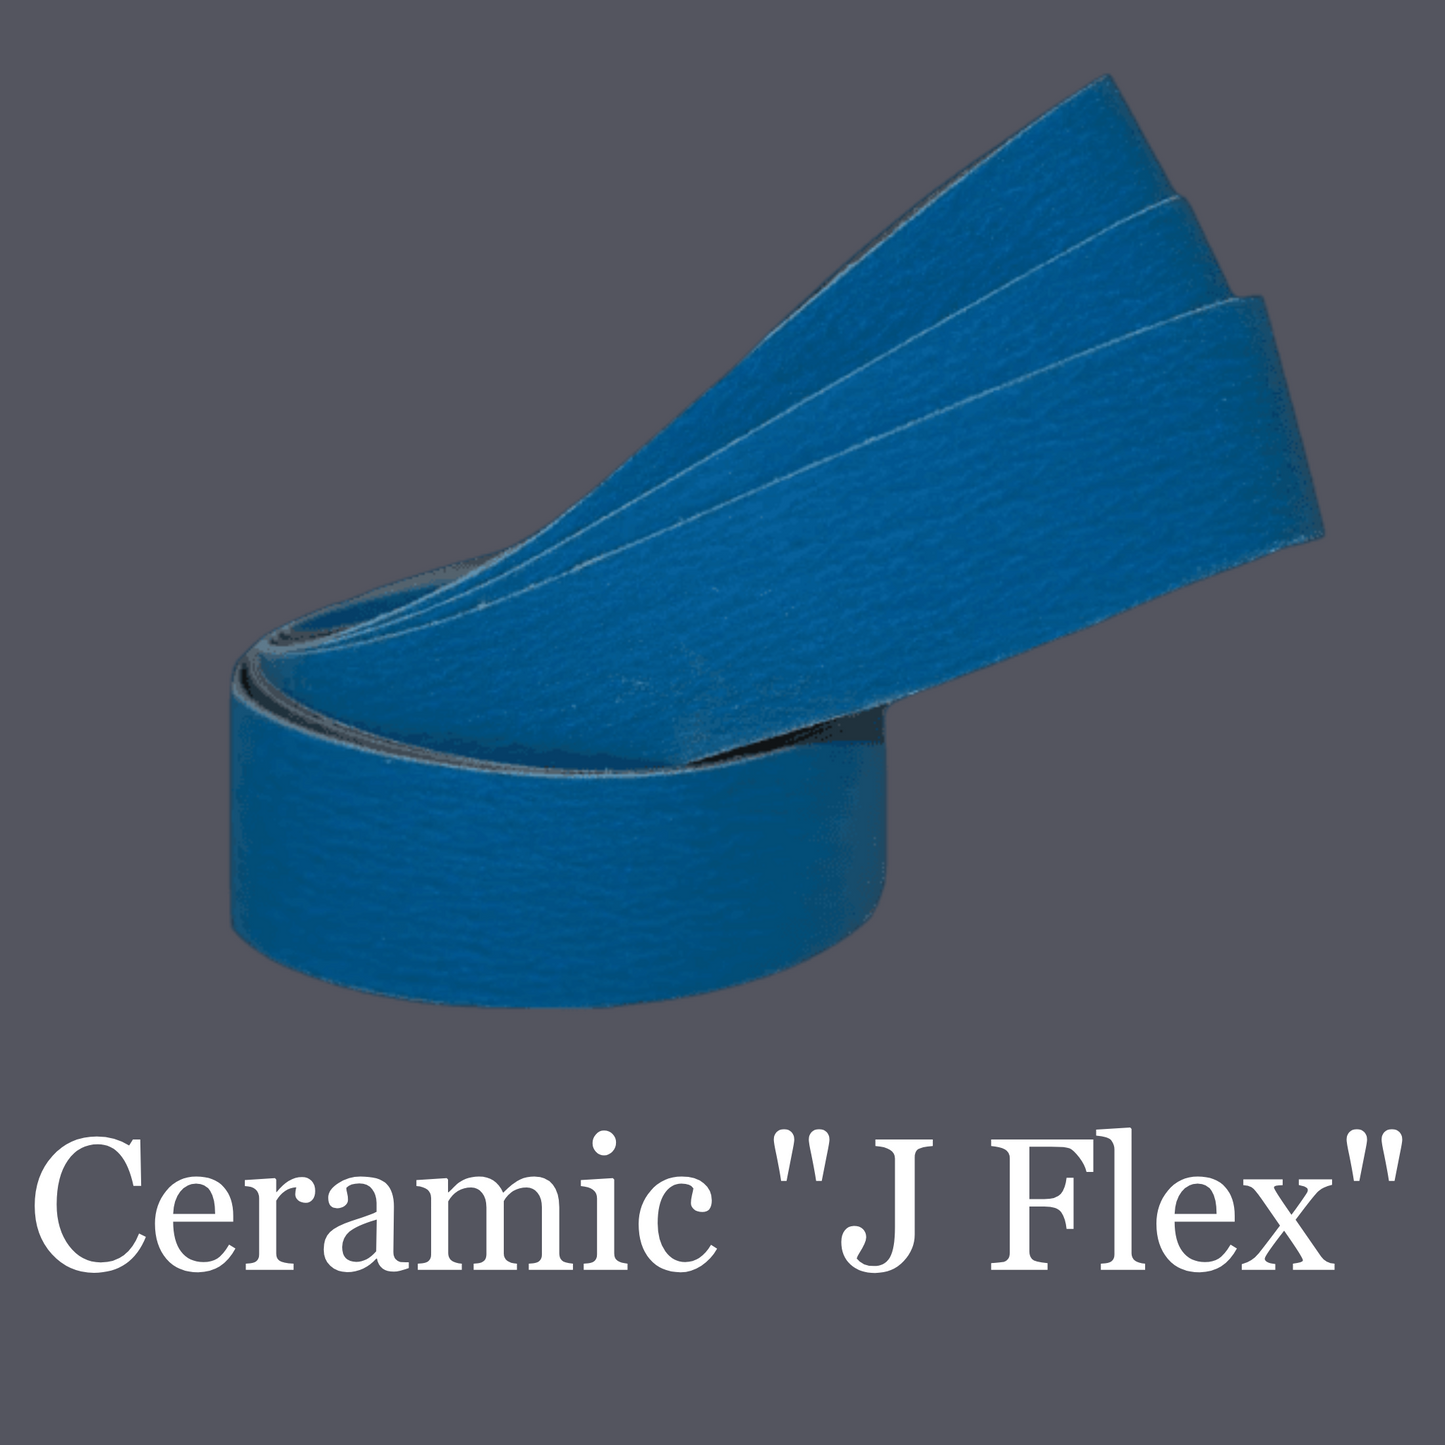 2” x 72” Premium Ceramic “J-Flex” Belt